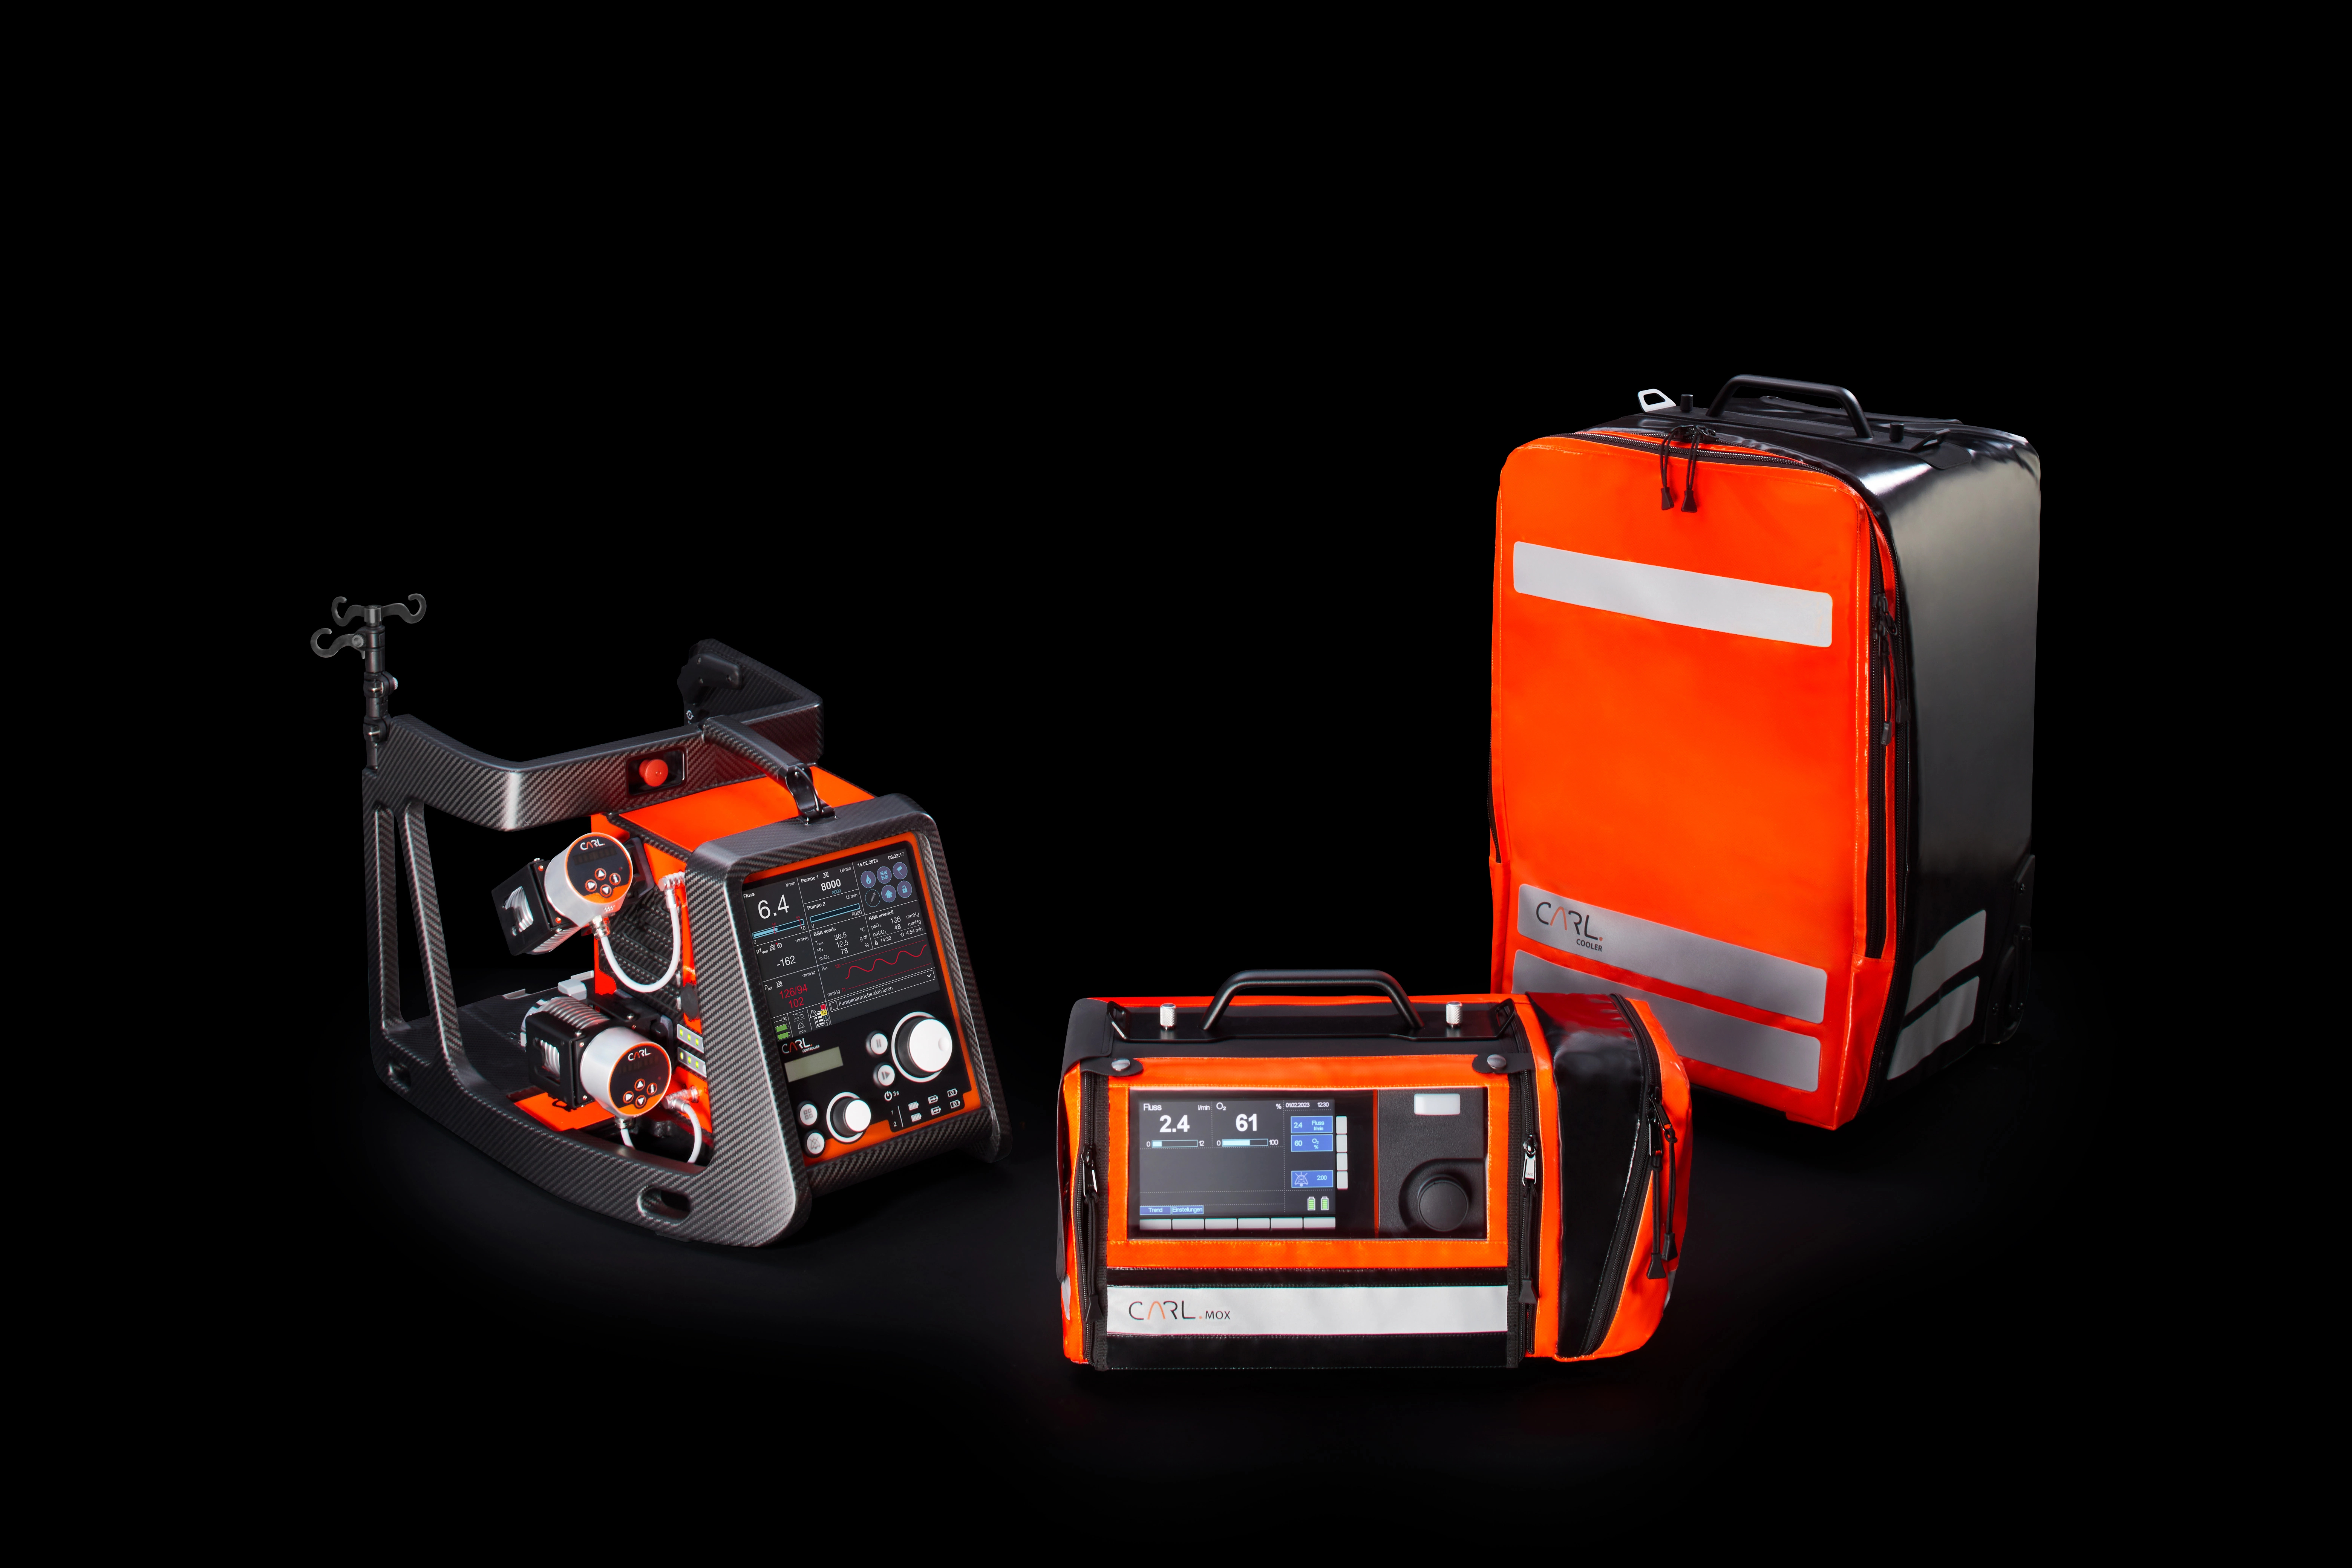 Vor schwarzem Hintergrund sind drei kompakte, tragbare Geräte in schwarz-orangenem Design zu sehen.